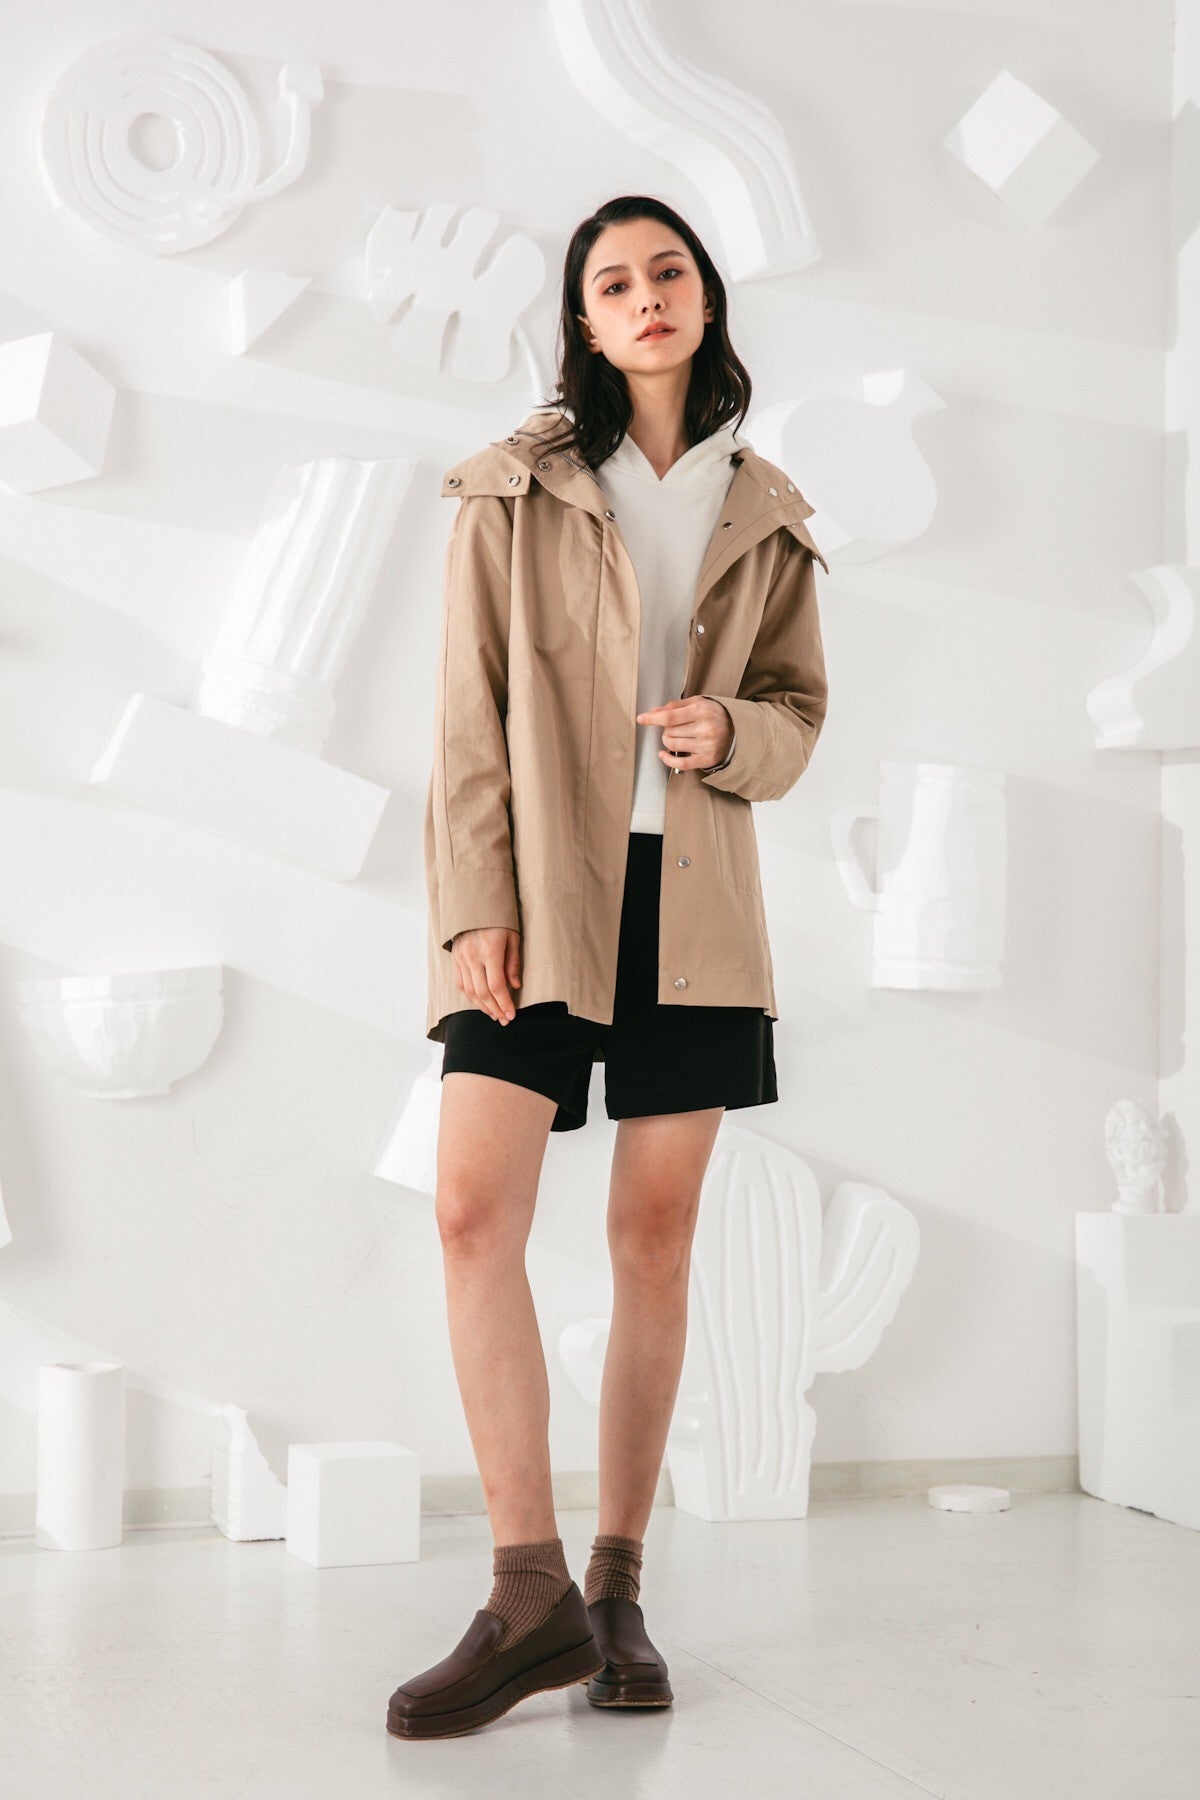 SKYE San Francisco SF shop ethical modern minimalist quality women clothing fashion Gabrielle Coat beige 4